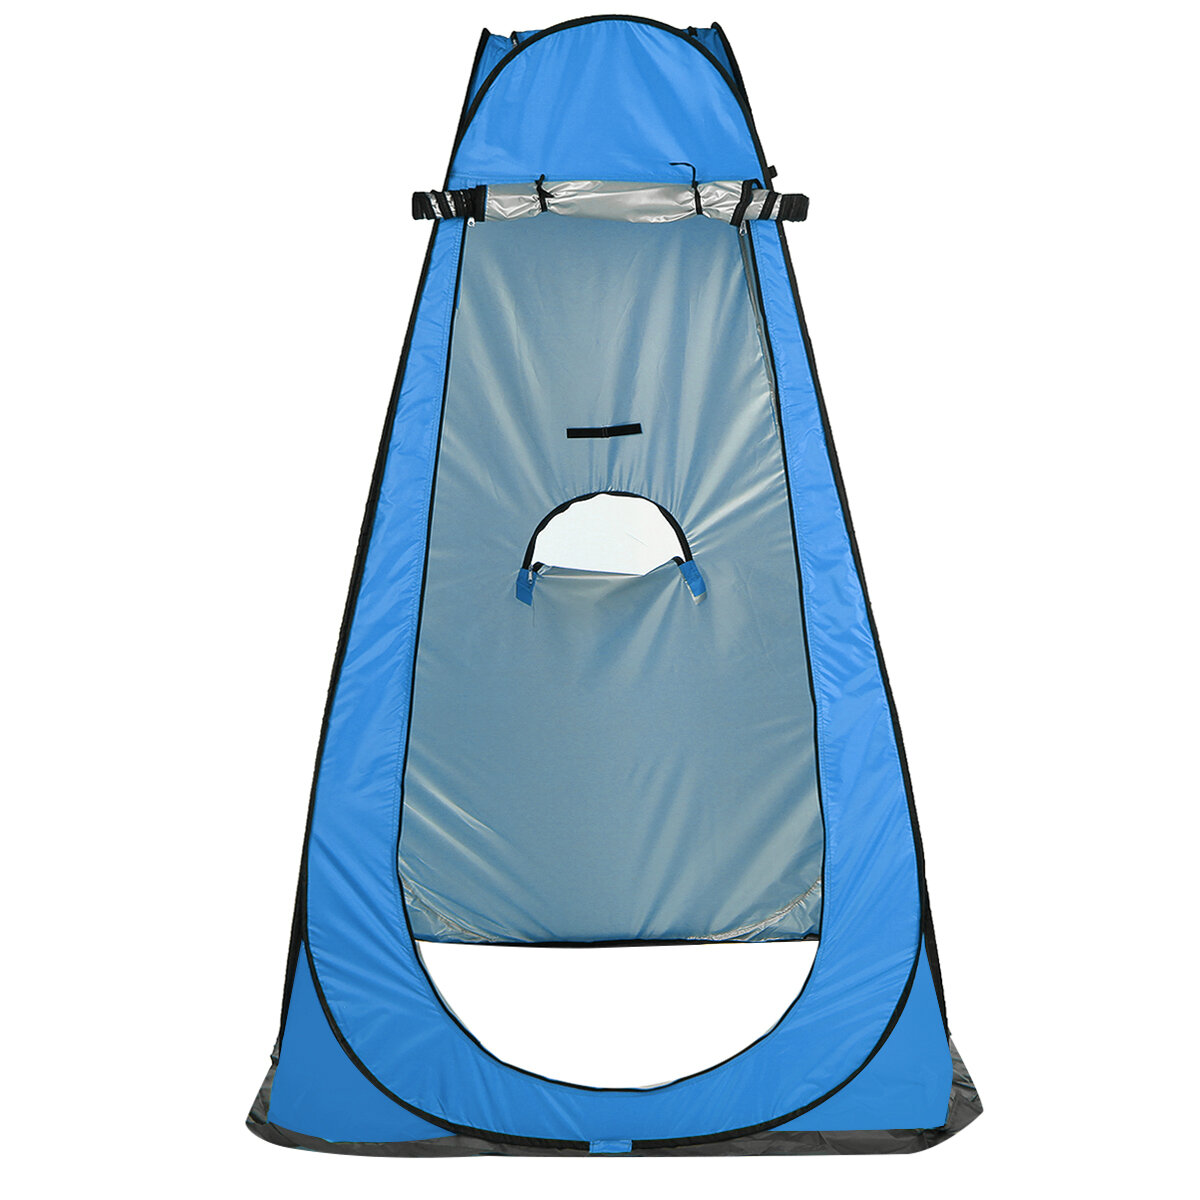 Tienda de camping para ducha y baño con privacidad, protección UV e impermeable, plegable y portátil.